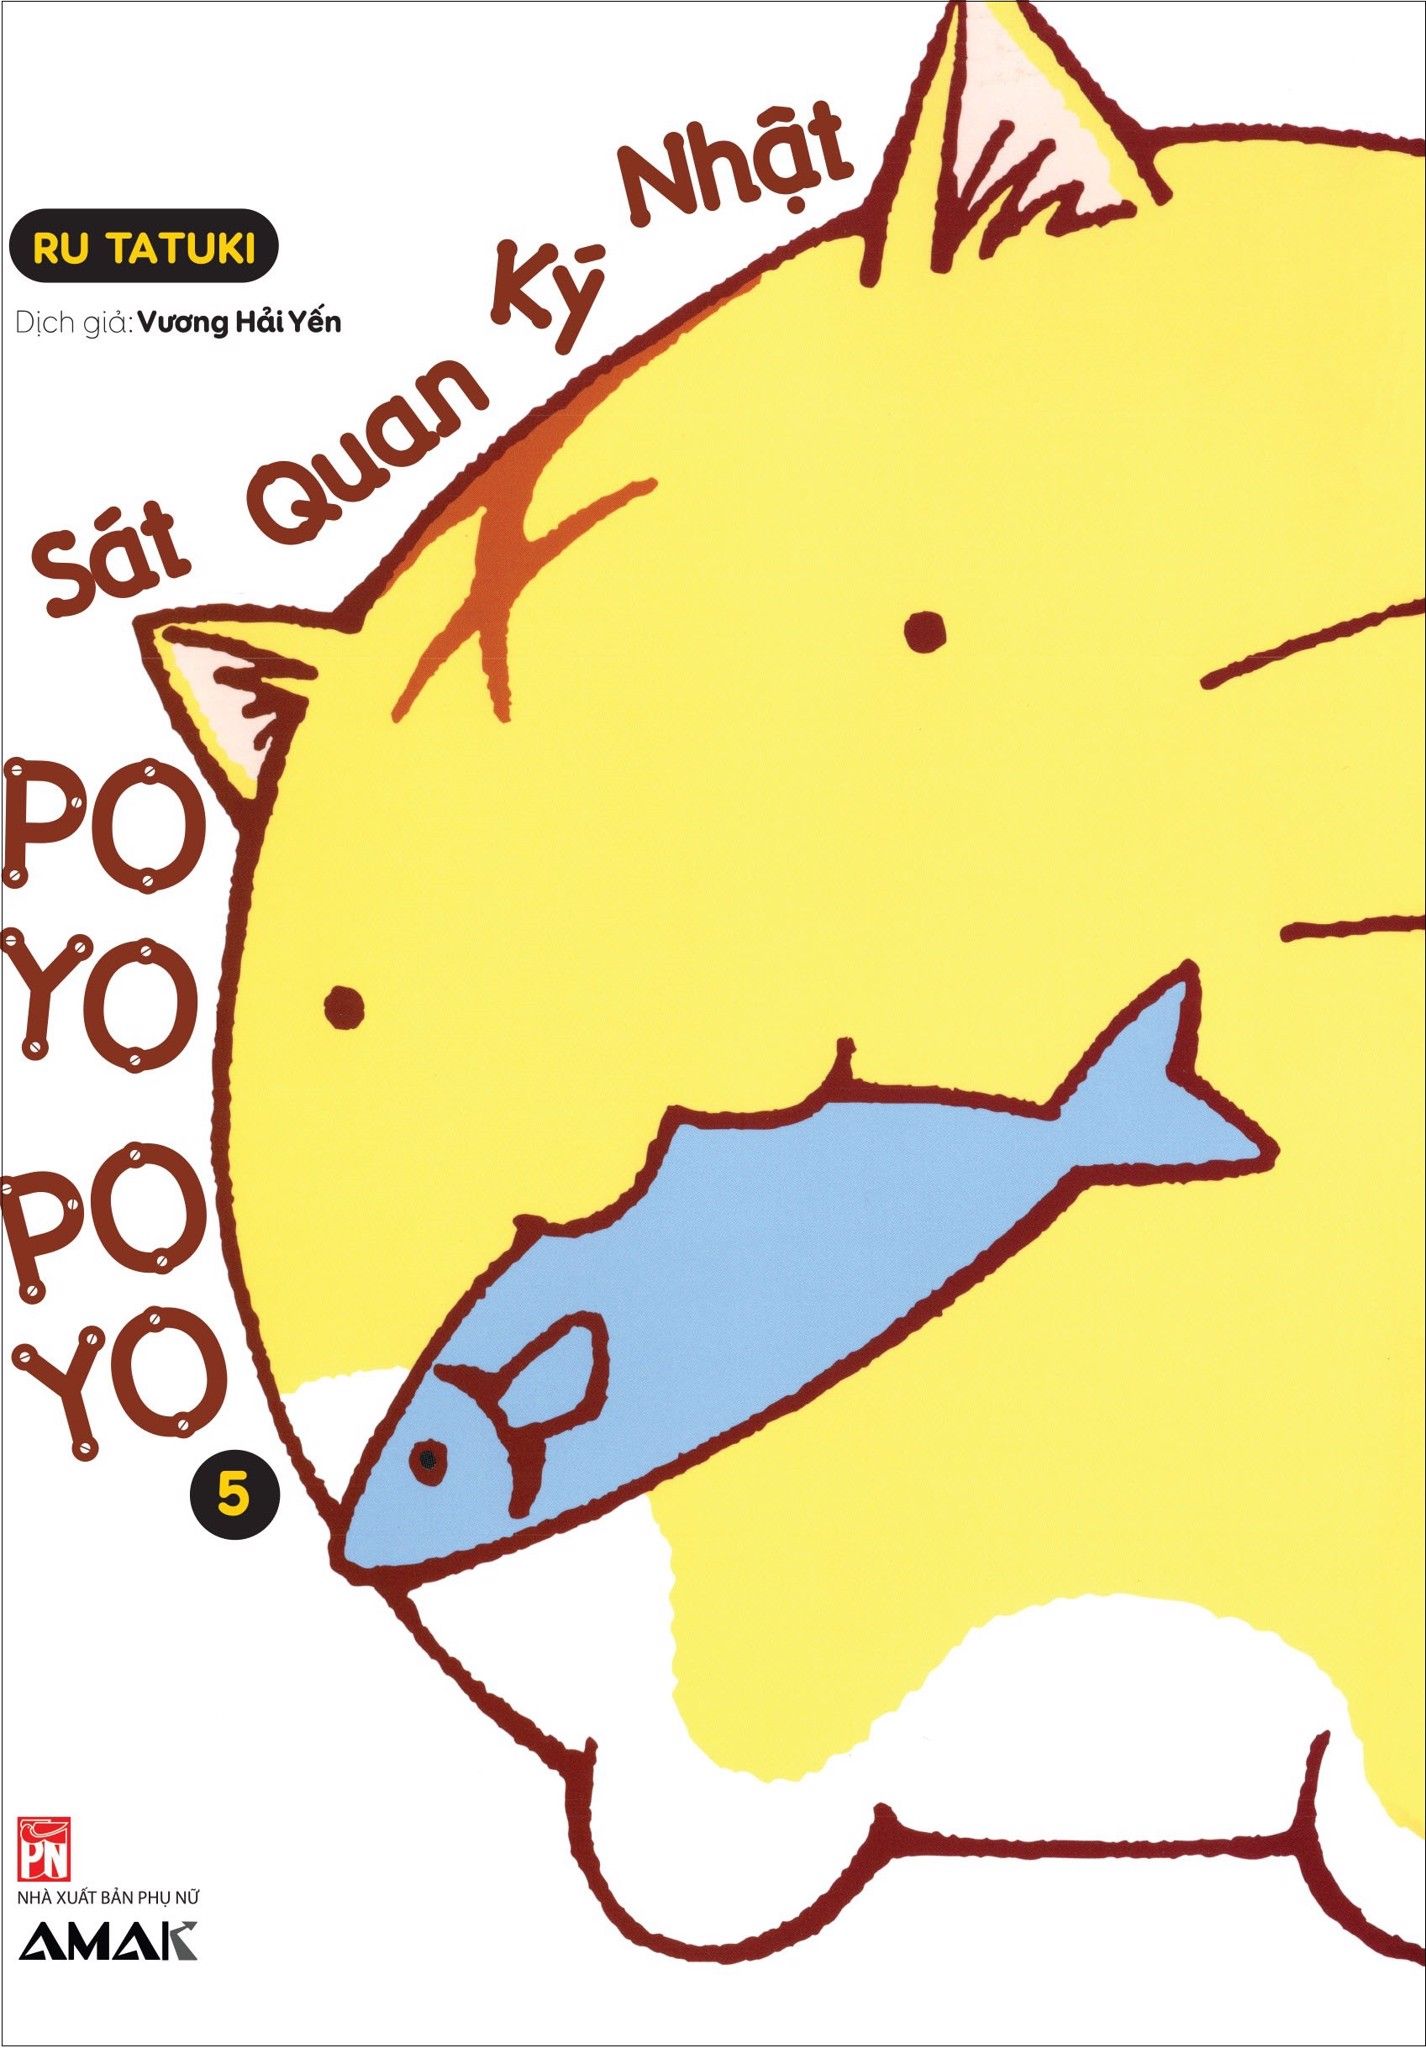  Nhật Ký Quan Sát Poyo Poyo – Tập 5 